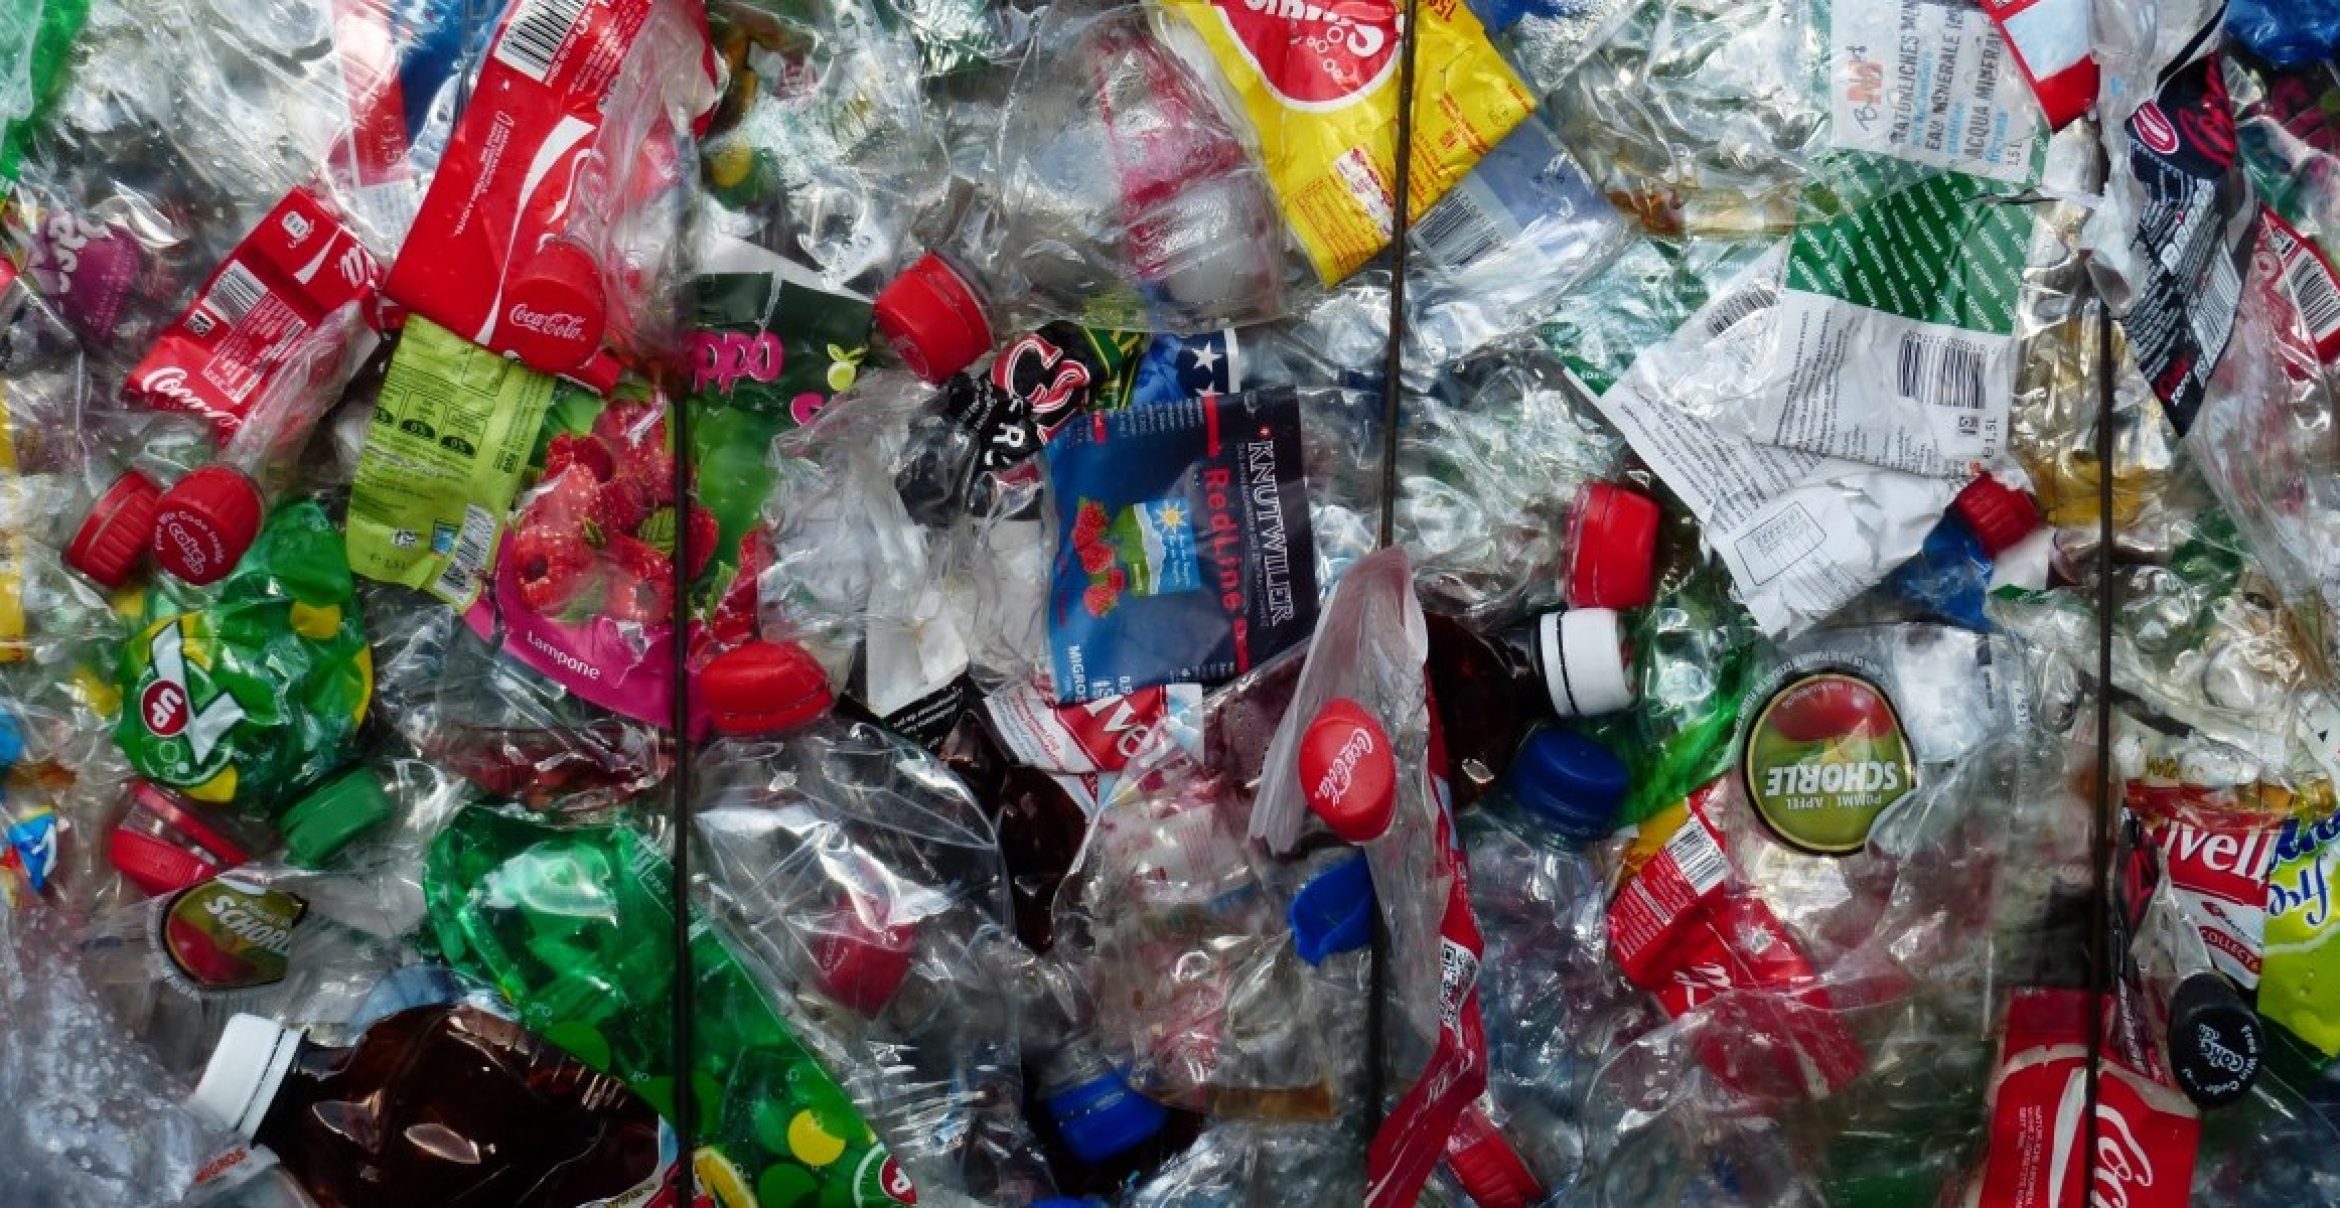 Preis für unsinnigste Einweg-Plastikverpackung des Jahres wurde verliehen